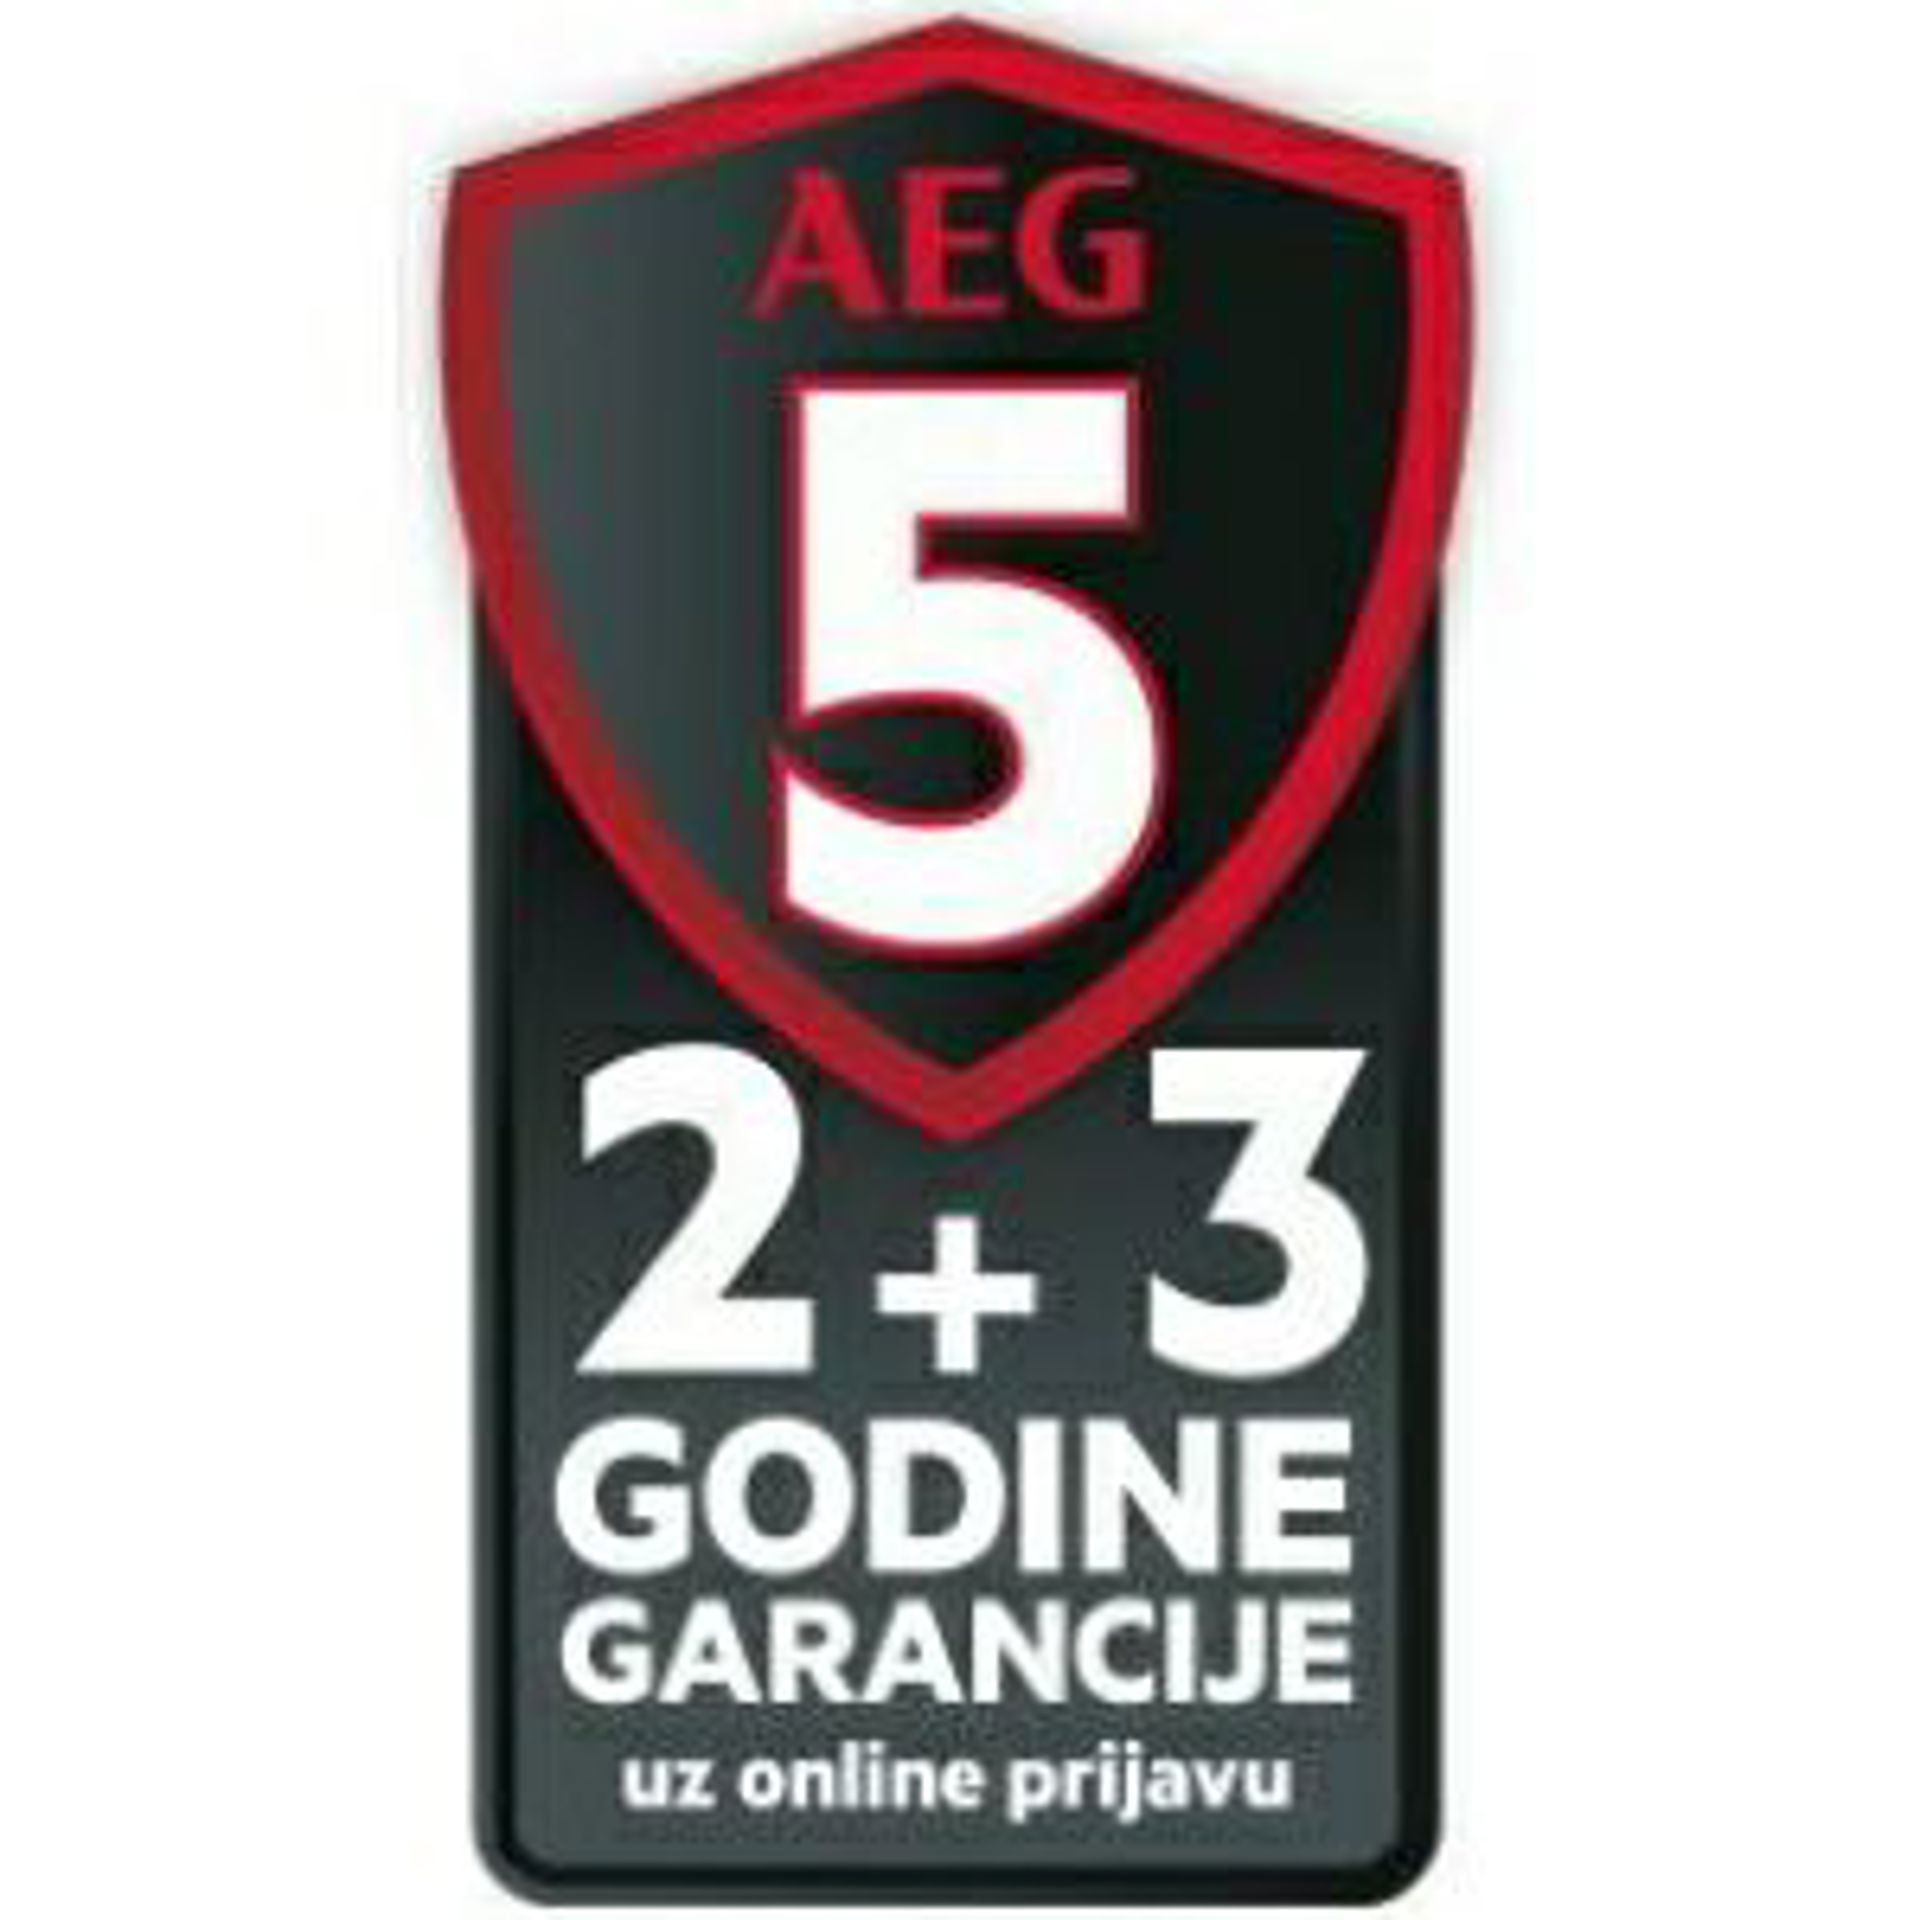 AEG bijela tehnika sa 2 + 3 godine garancije